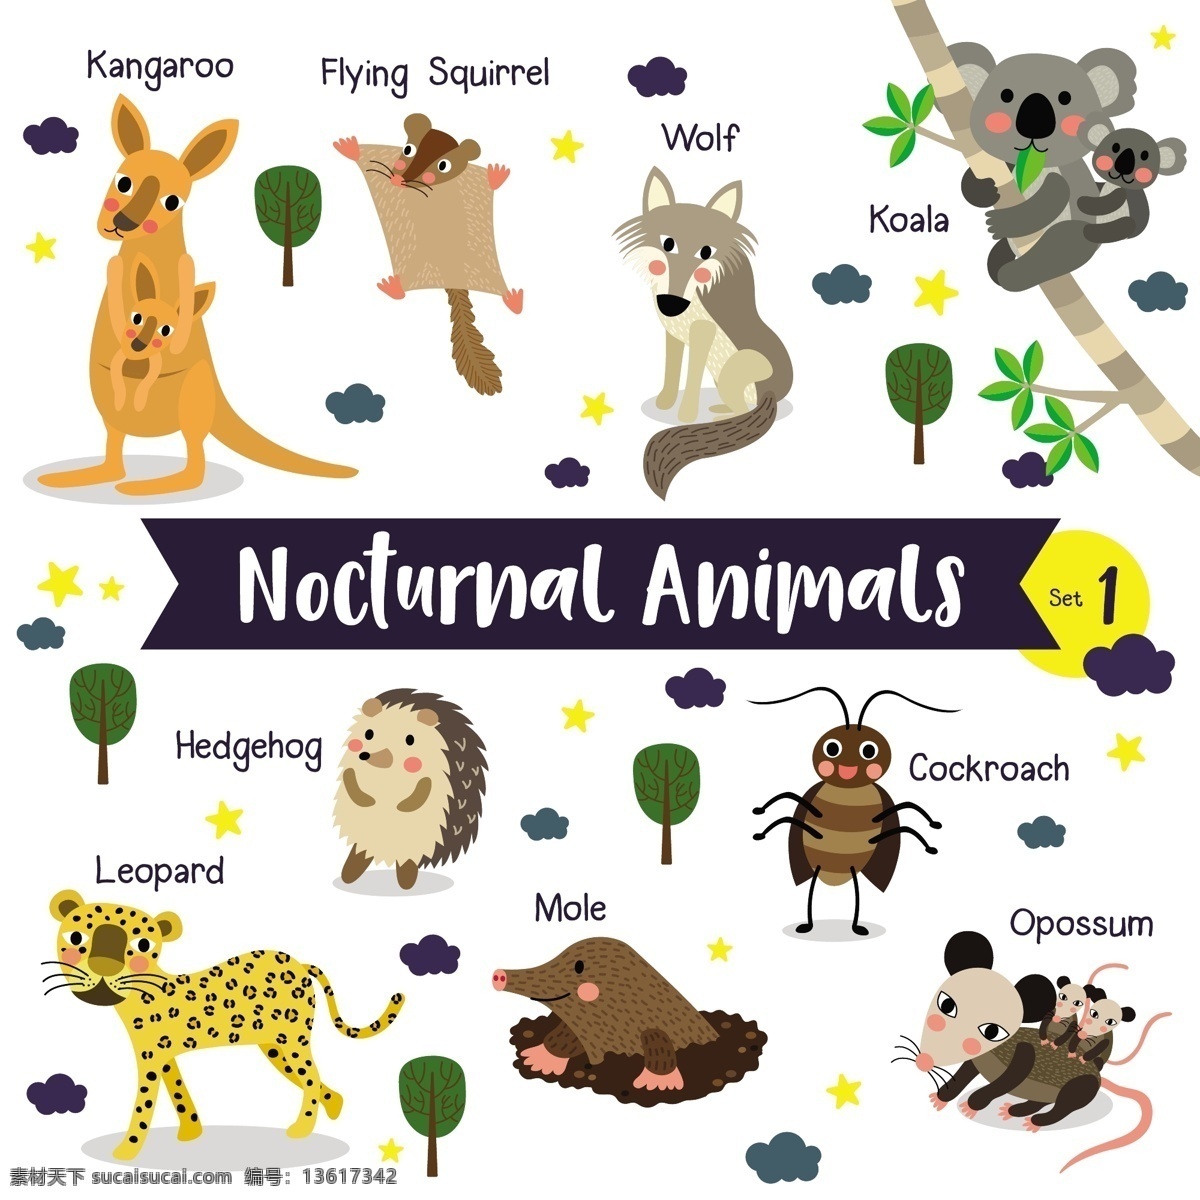 袋鼠 世界各地 野生动物 卡通 形象 矢量 夜晚 行动 动物 豹子 护理 野狗 老虎 森林 小动物 插画